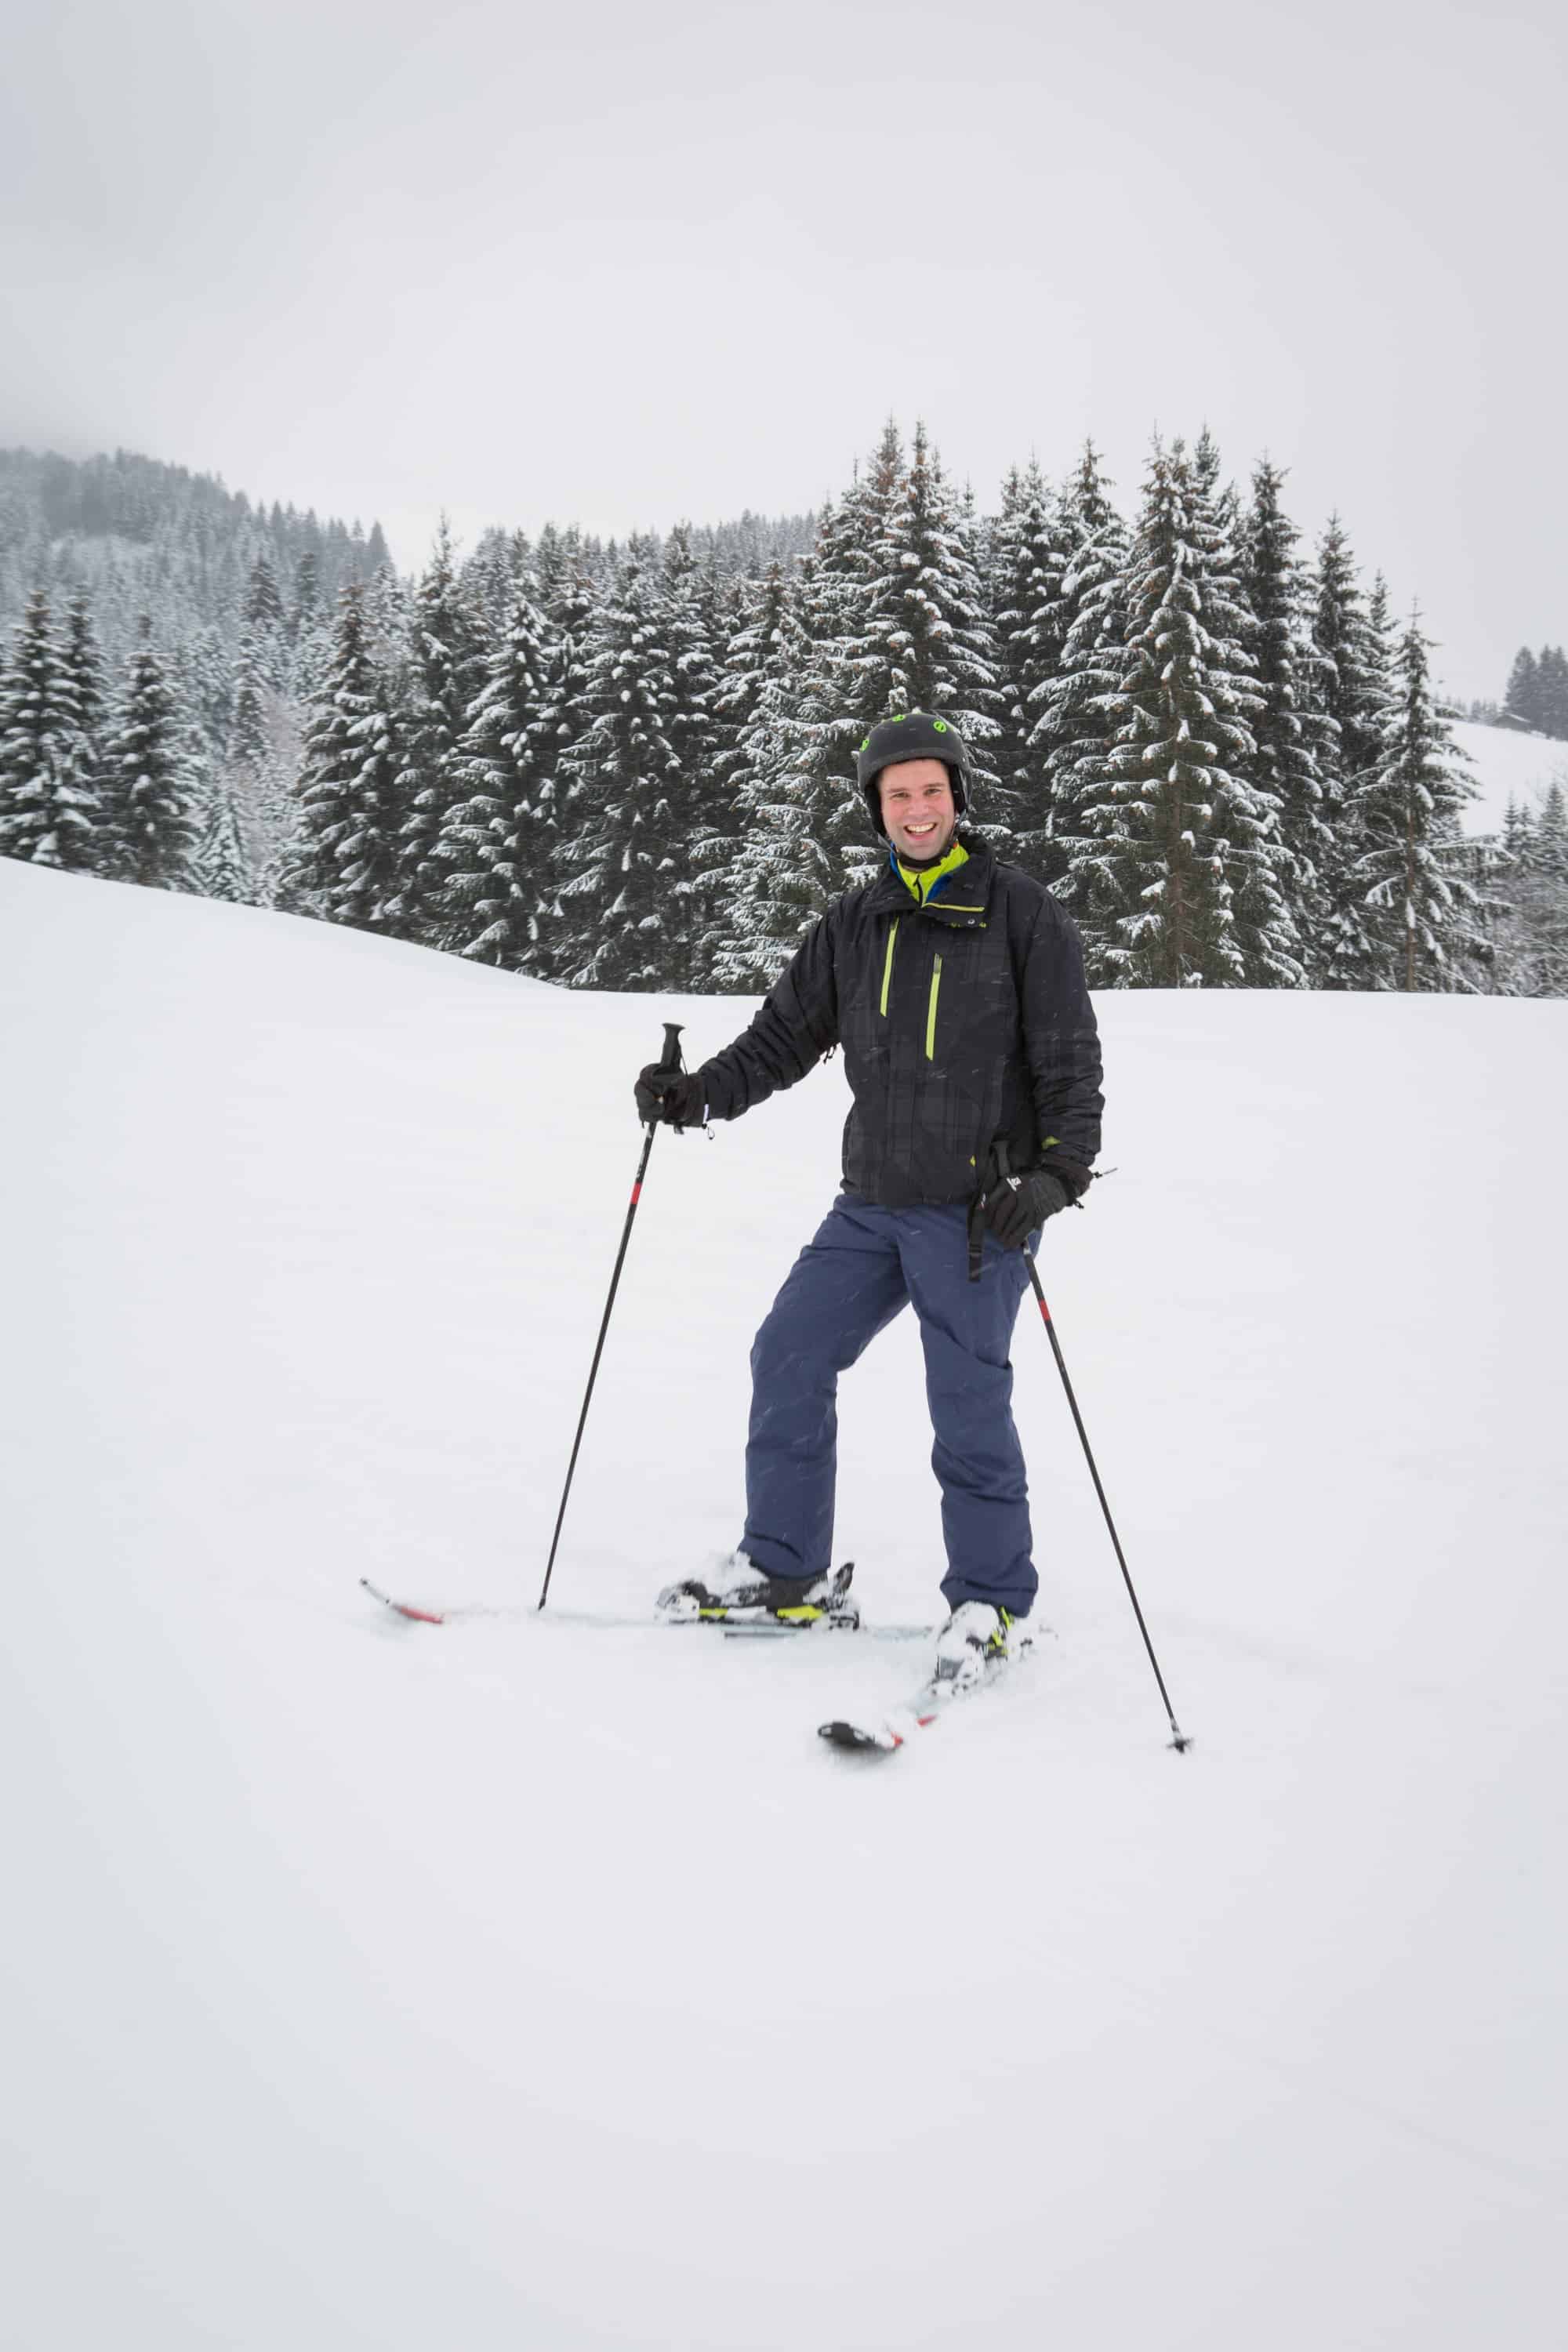 Learning to Ski in St. johann, Tirol, Austria